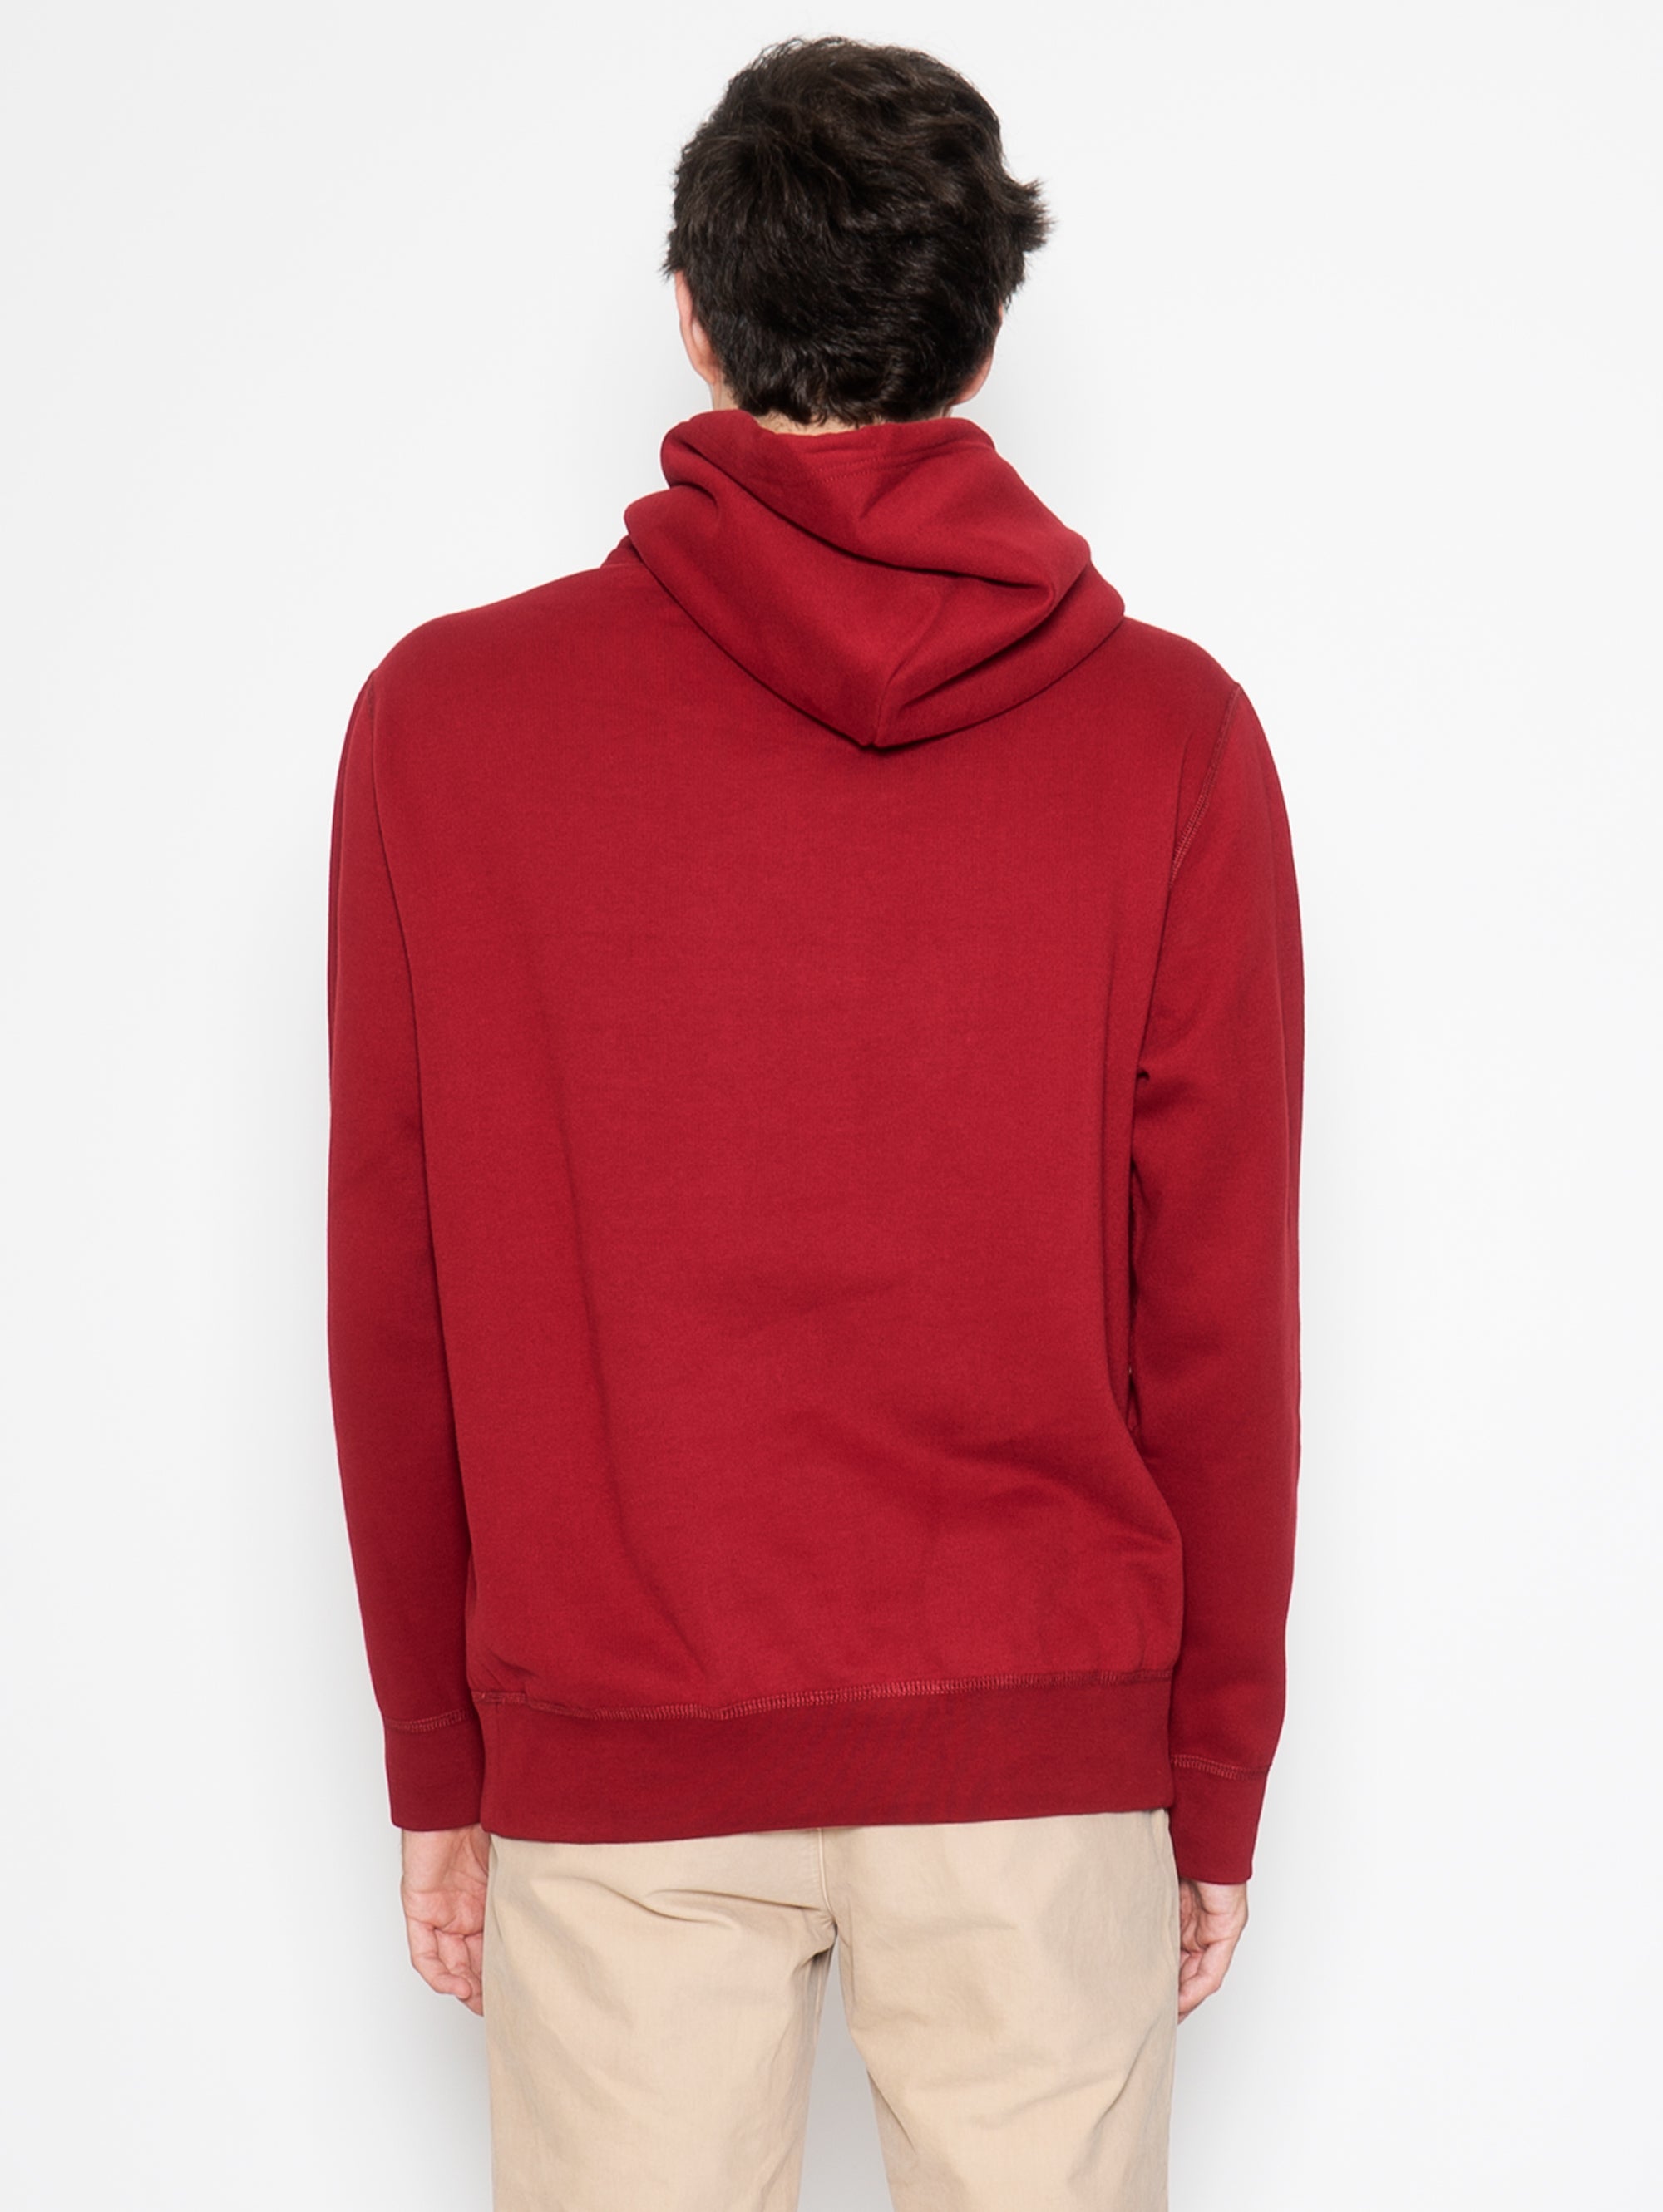 Rotes Kapuzen-Sweatshirt